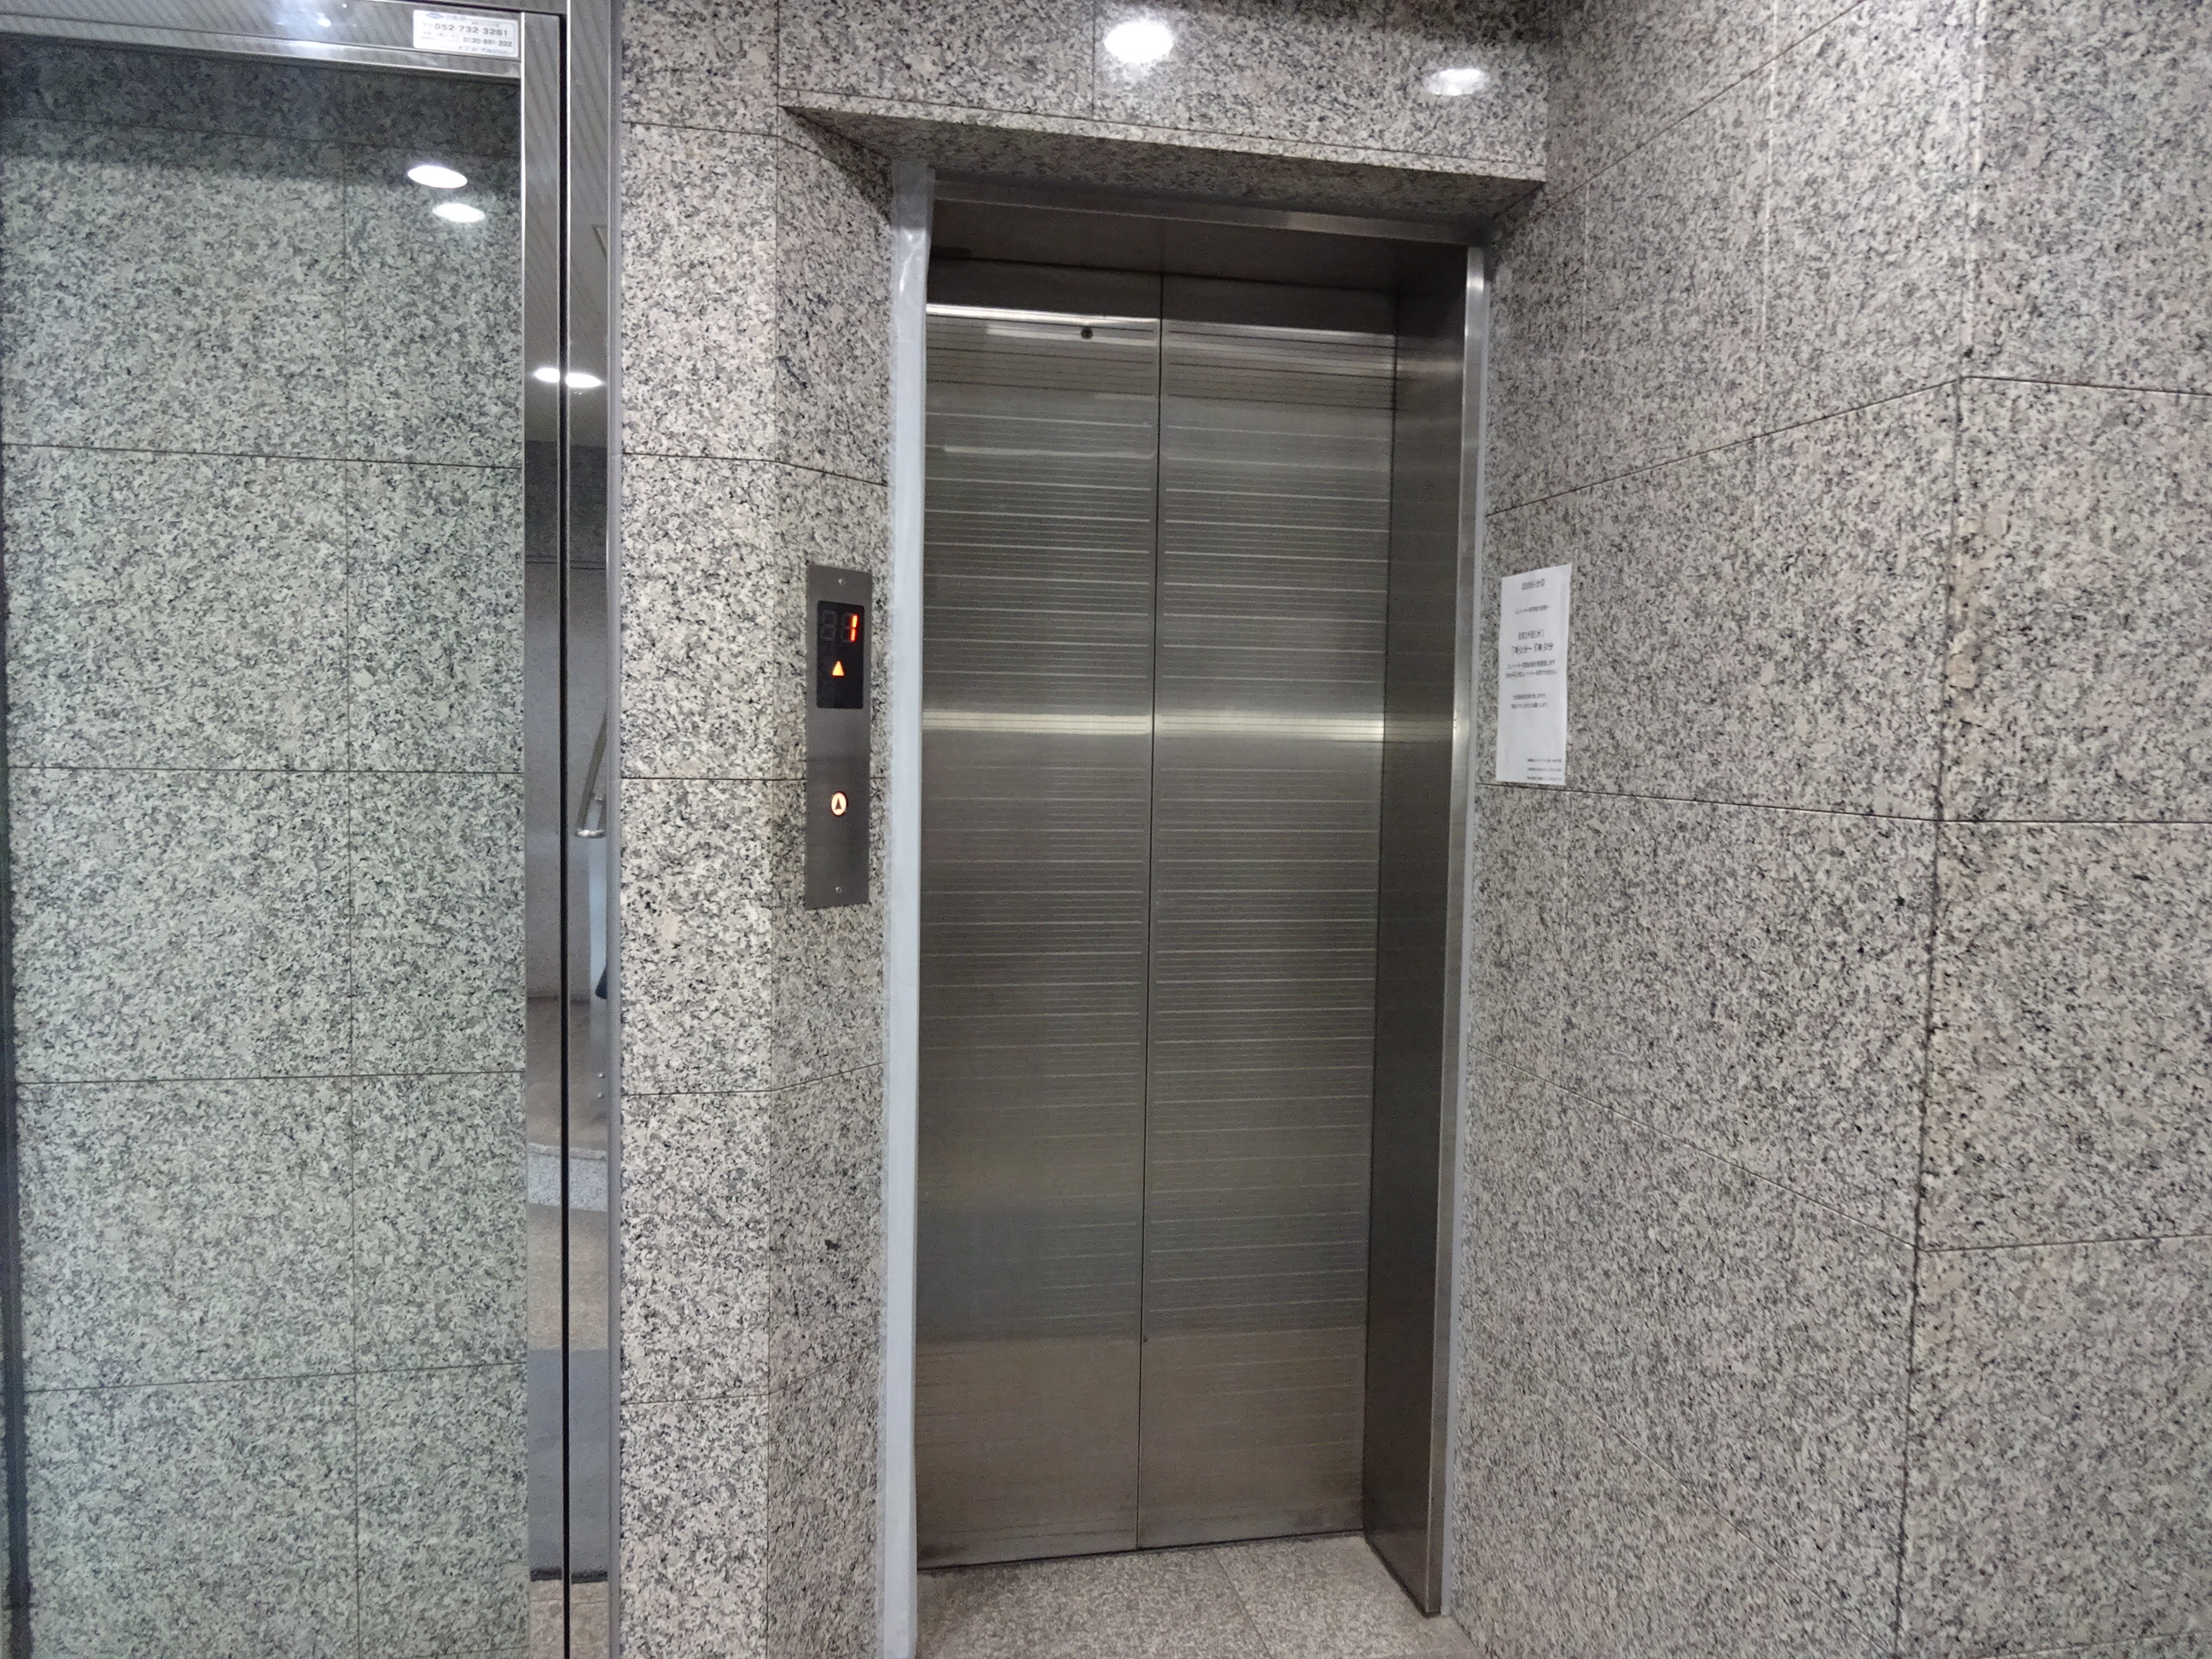 エレベータホール